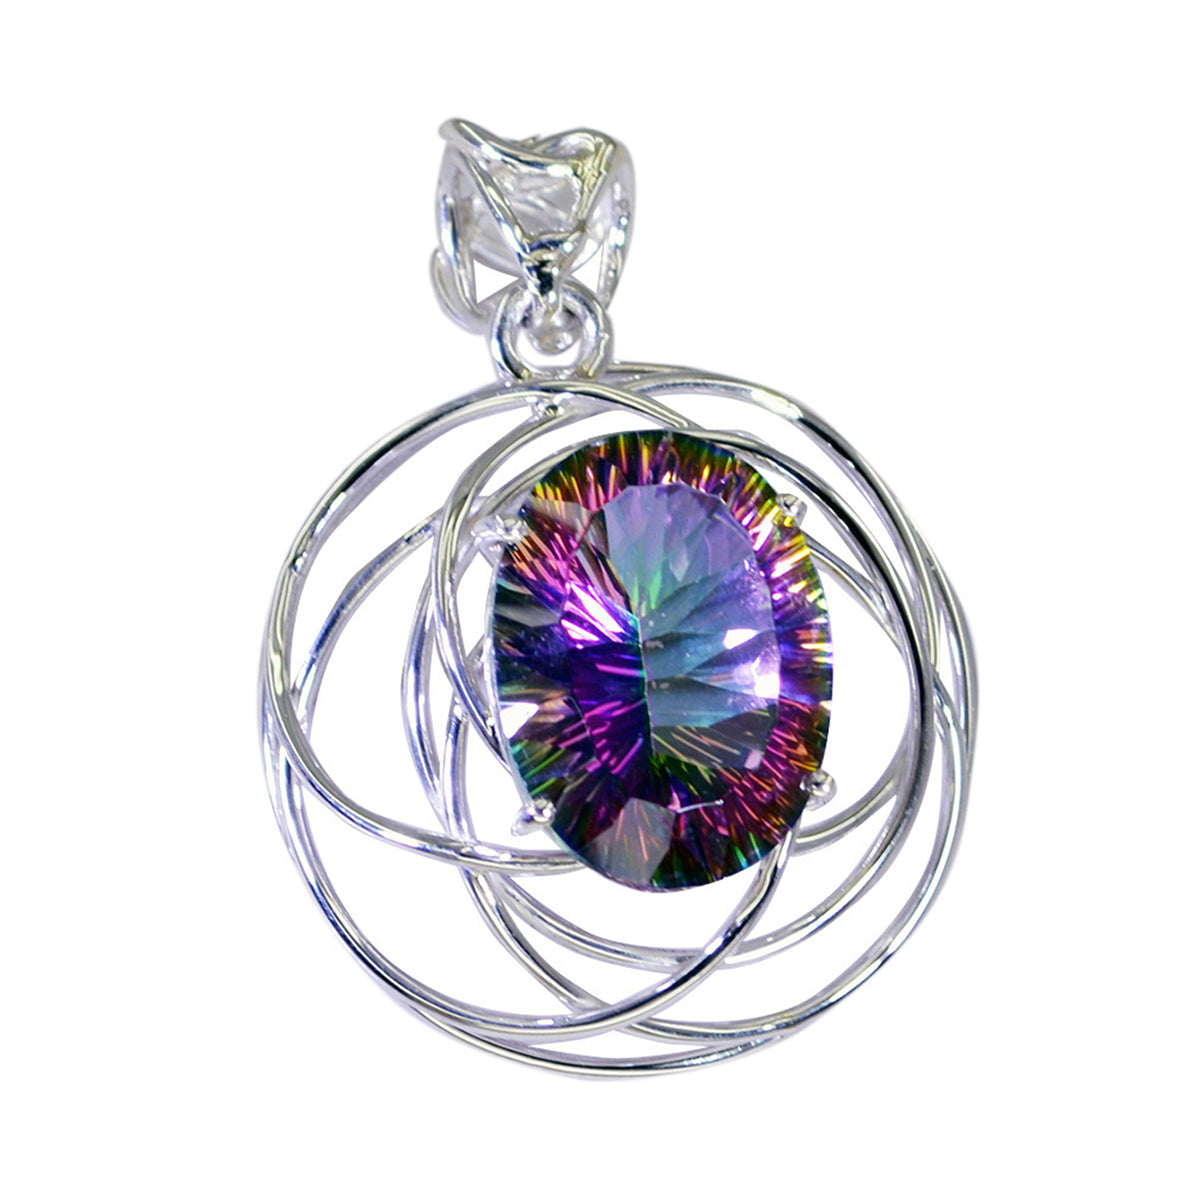 riyo affascinanti gemme ovali sfaccettate multicolore quarzo mistico ciondolo in argento massiccio regalo per matrimonio